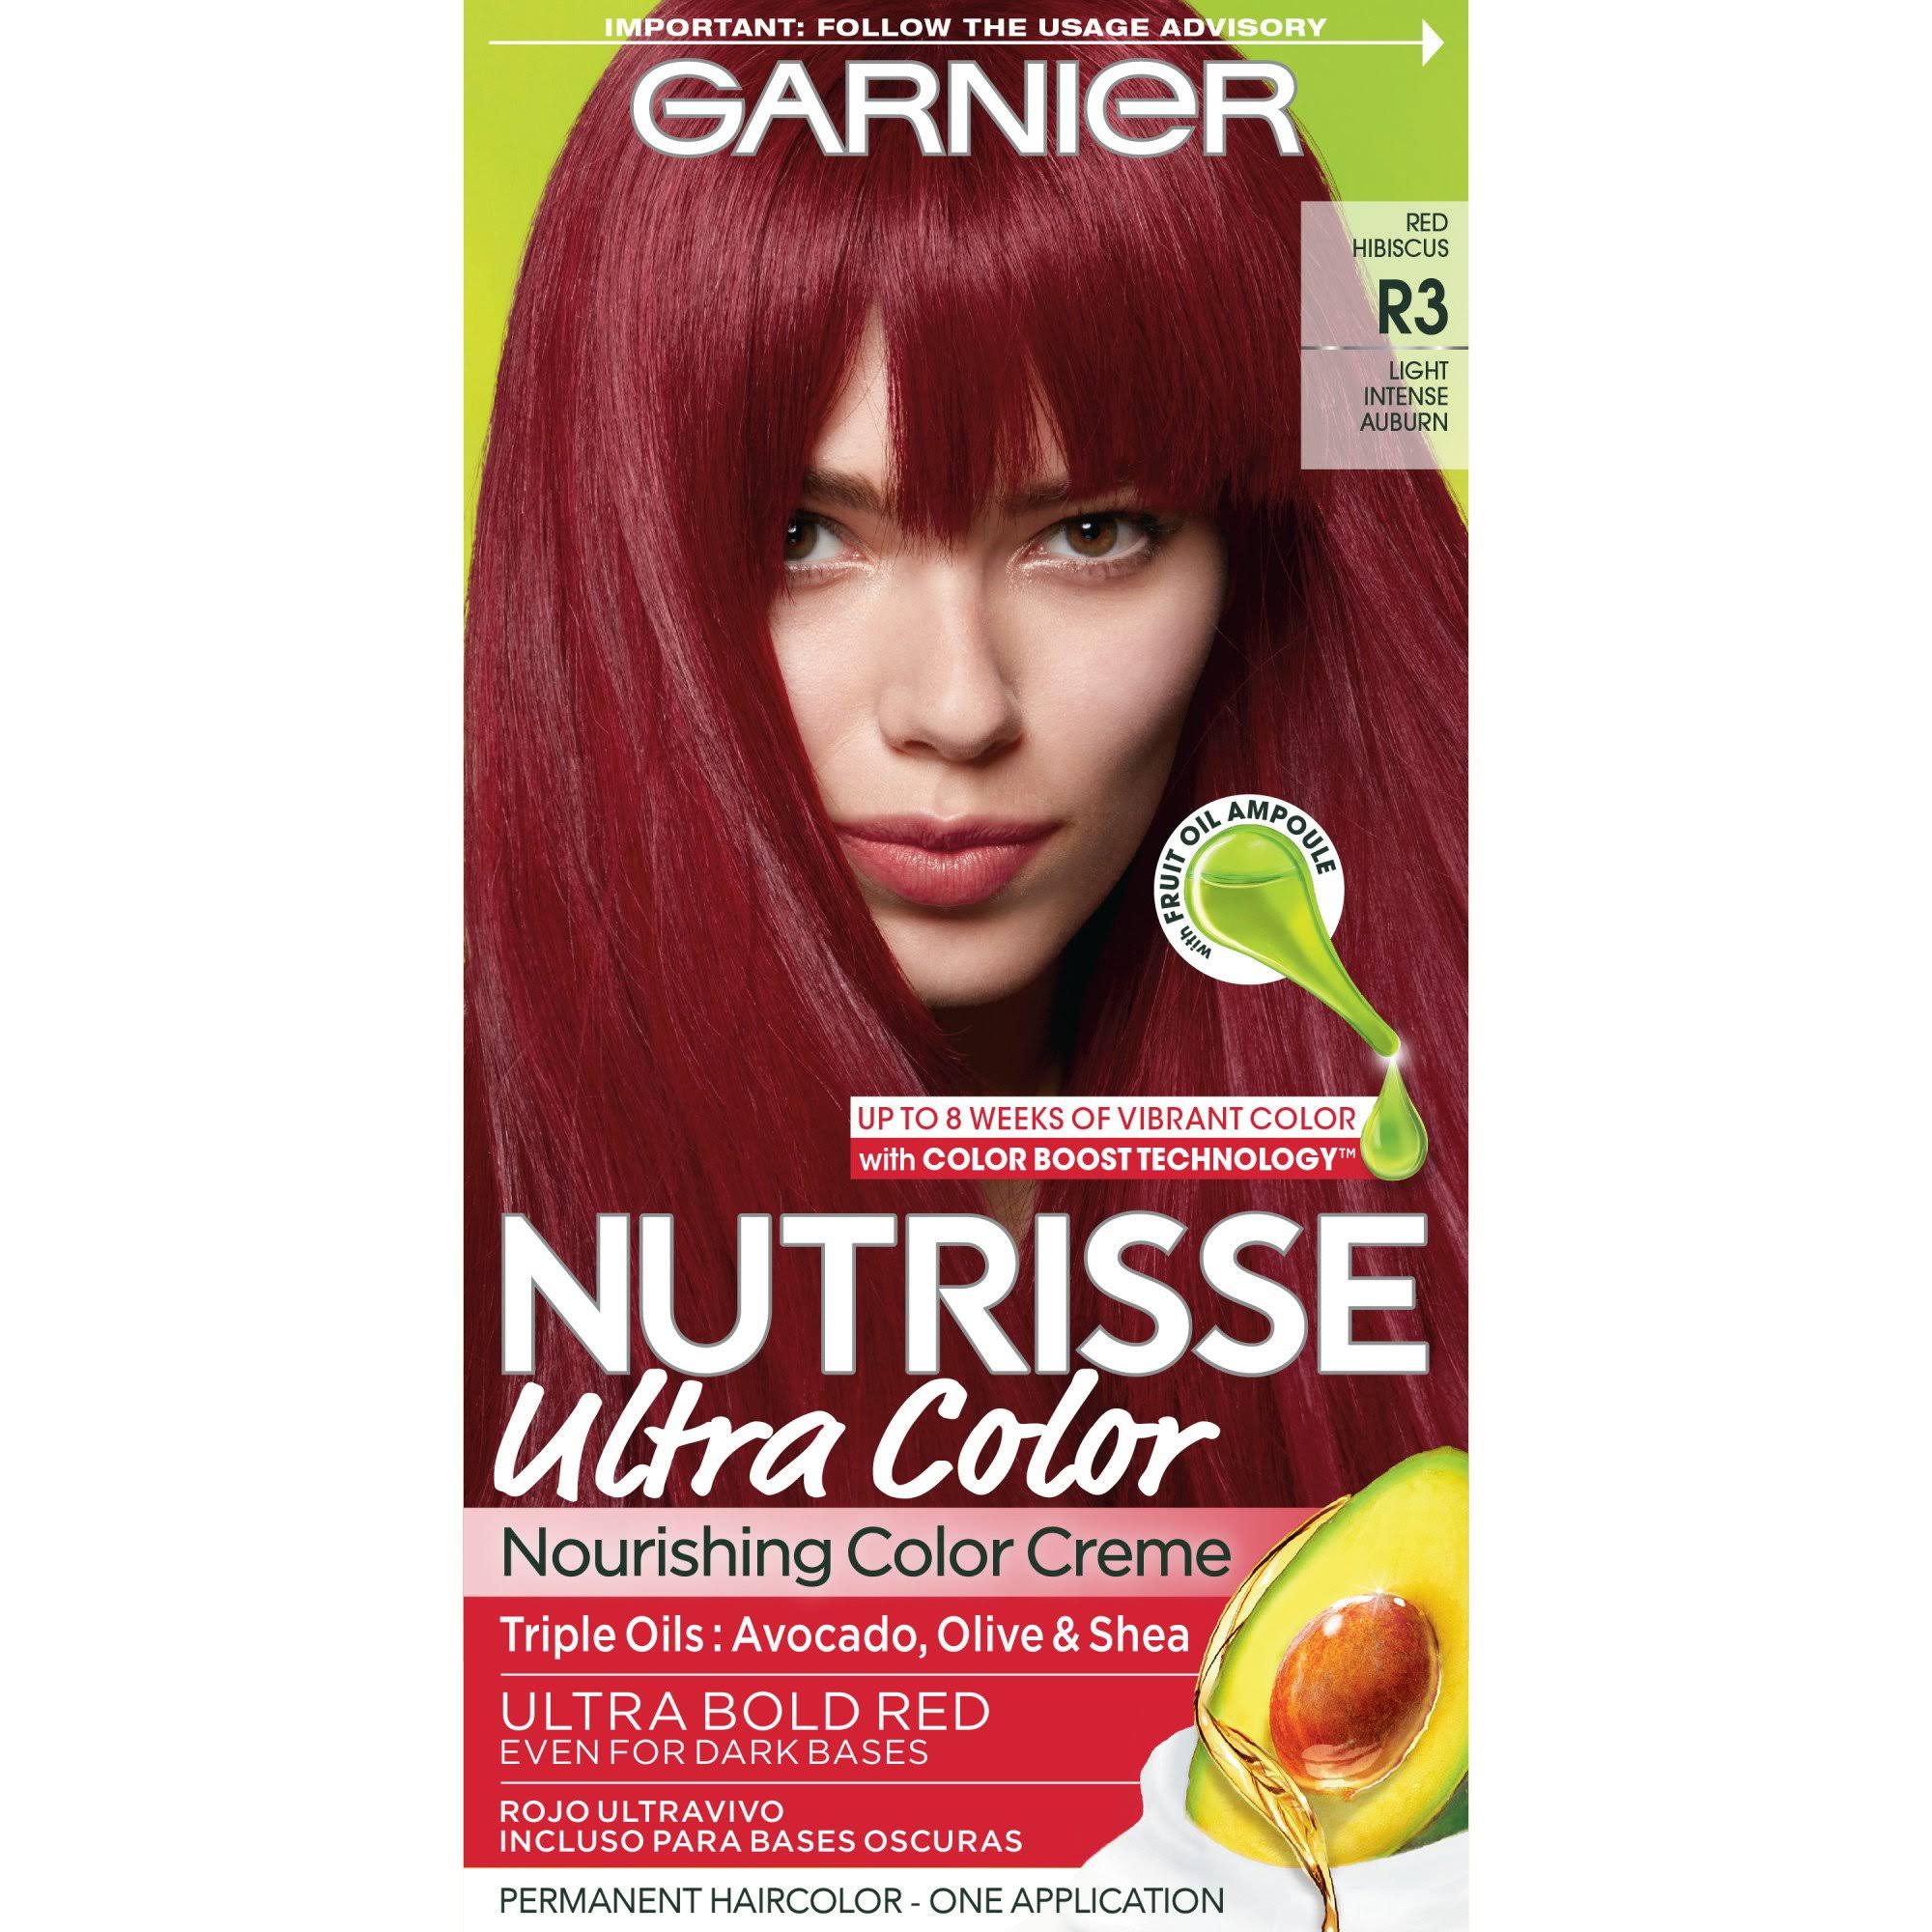 Garnier Nutrisse Ultra Color Nourishing Color Crème - R3 Light Intense Auburn